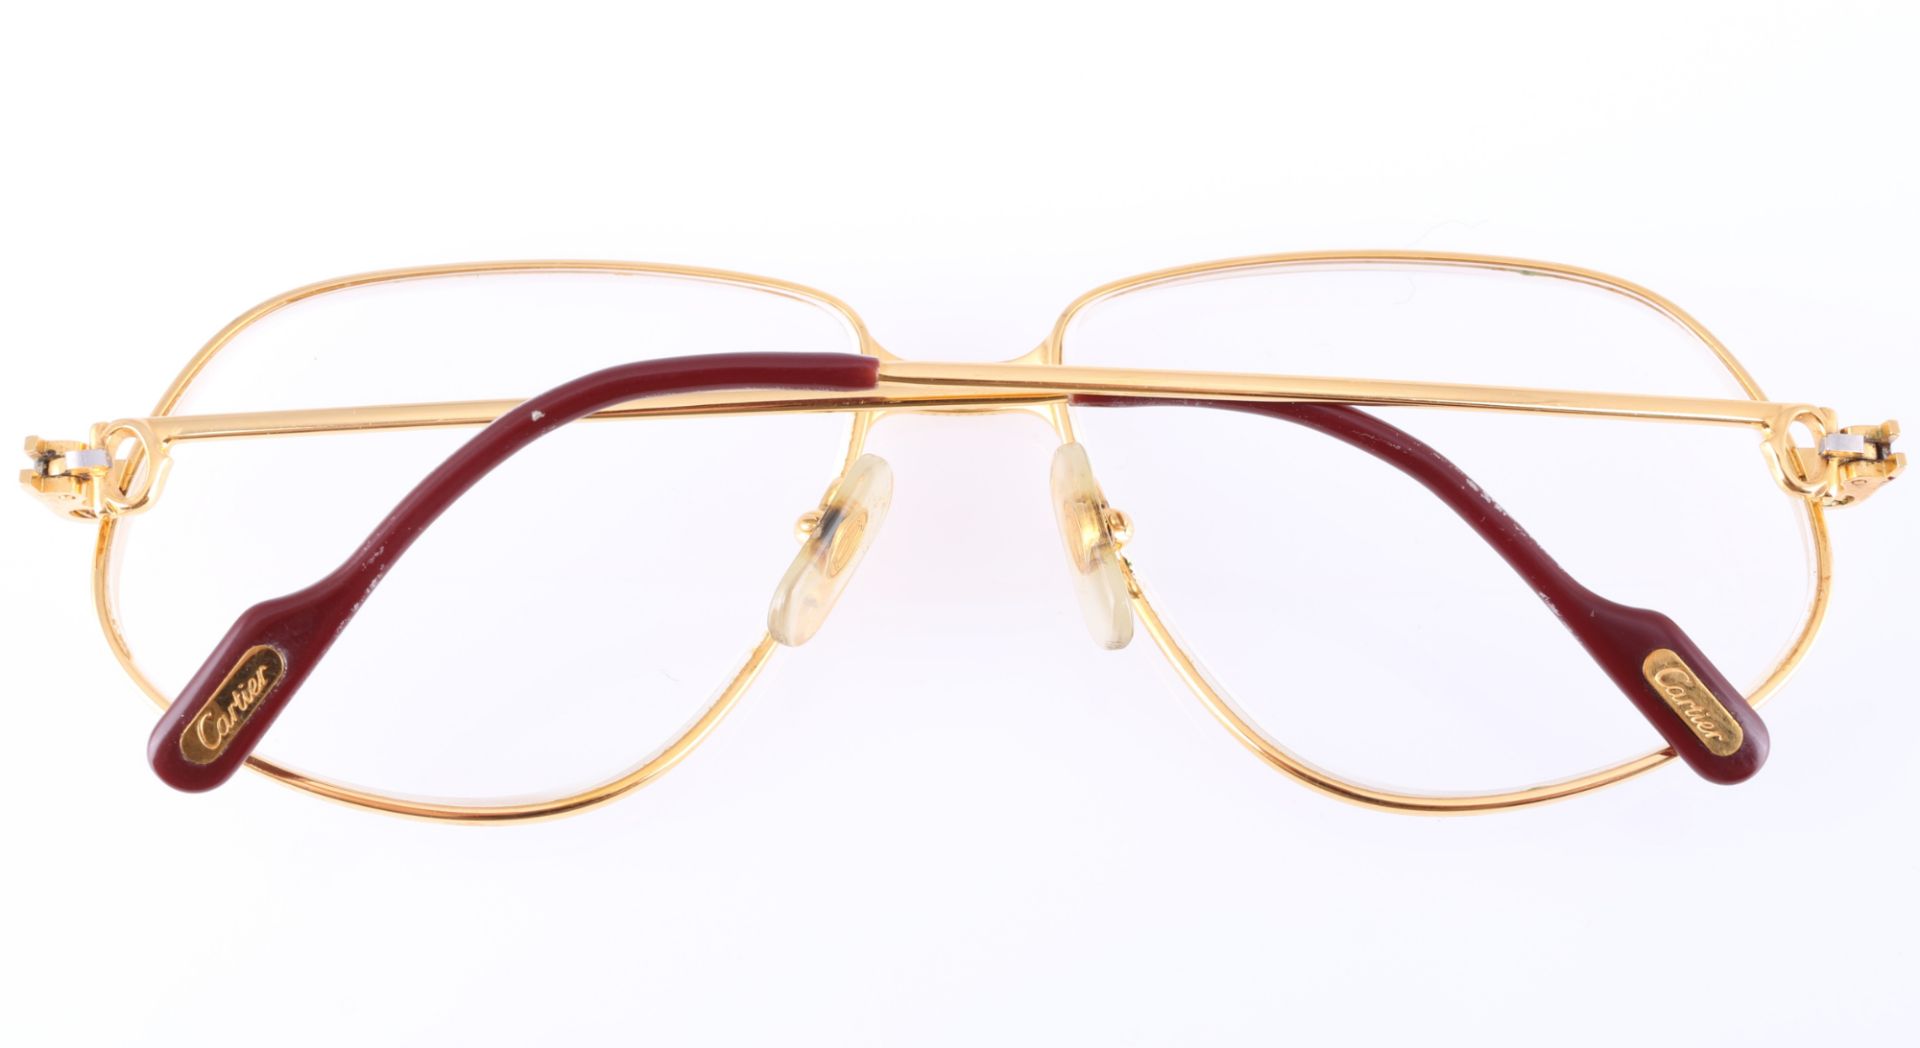 Cartier Panthère G.M. Vintage Brille, vintage designer glasses, - Image 4 of 5